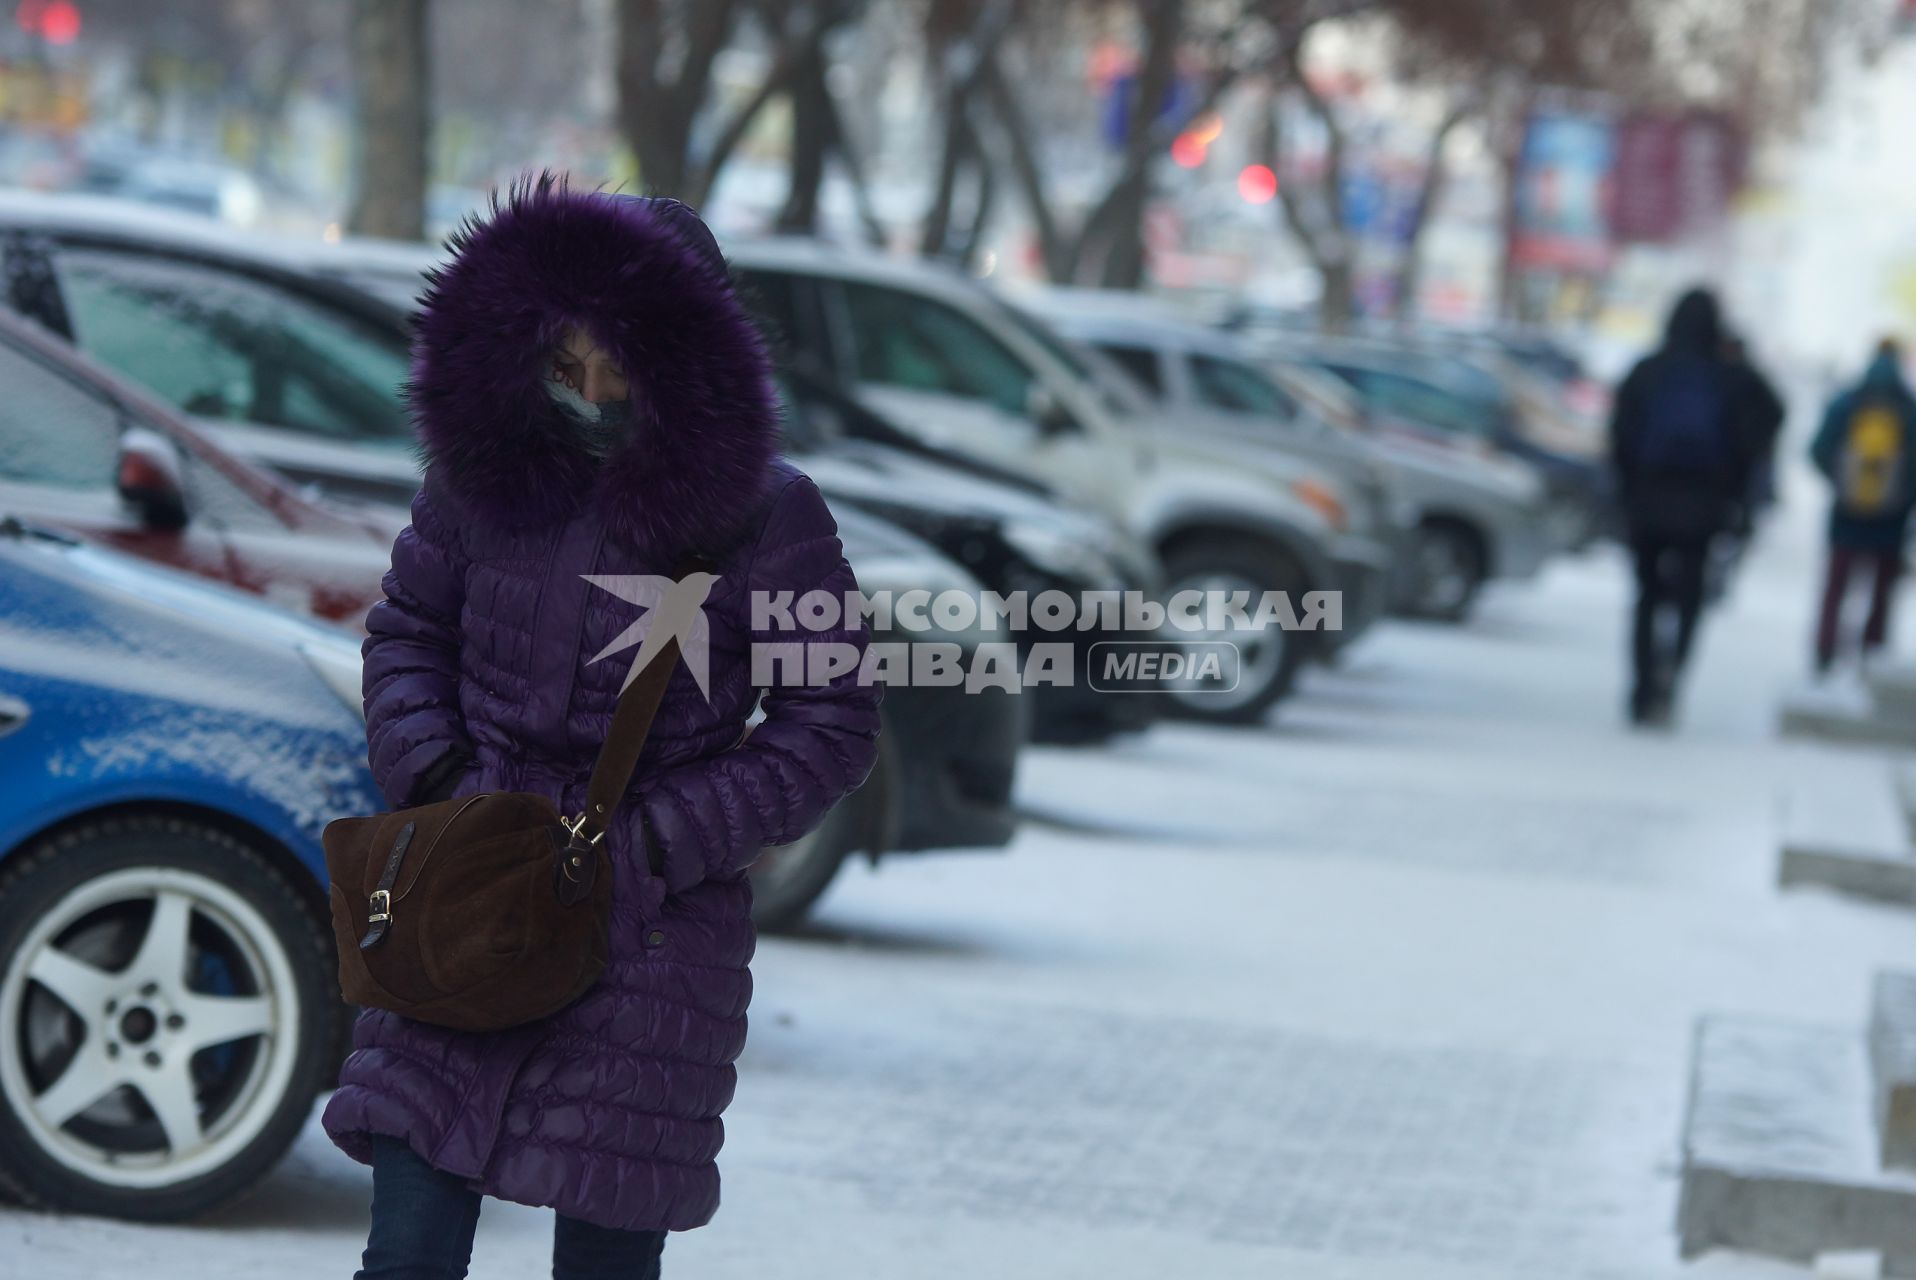 Девушка идет по улице во время сильных морозов в Екатеринбурге